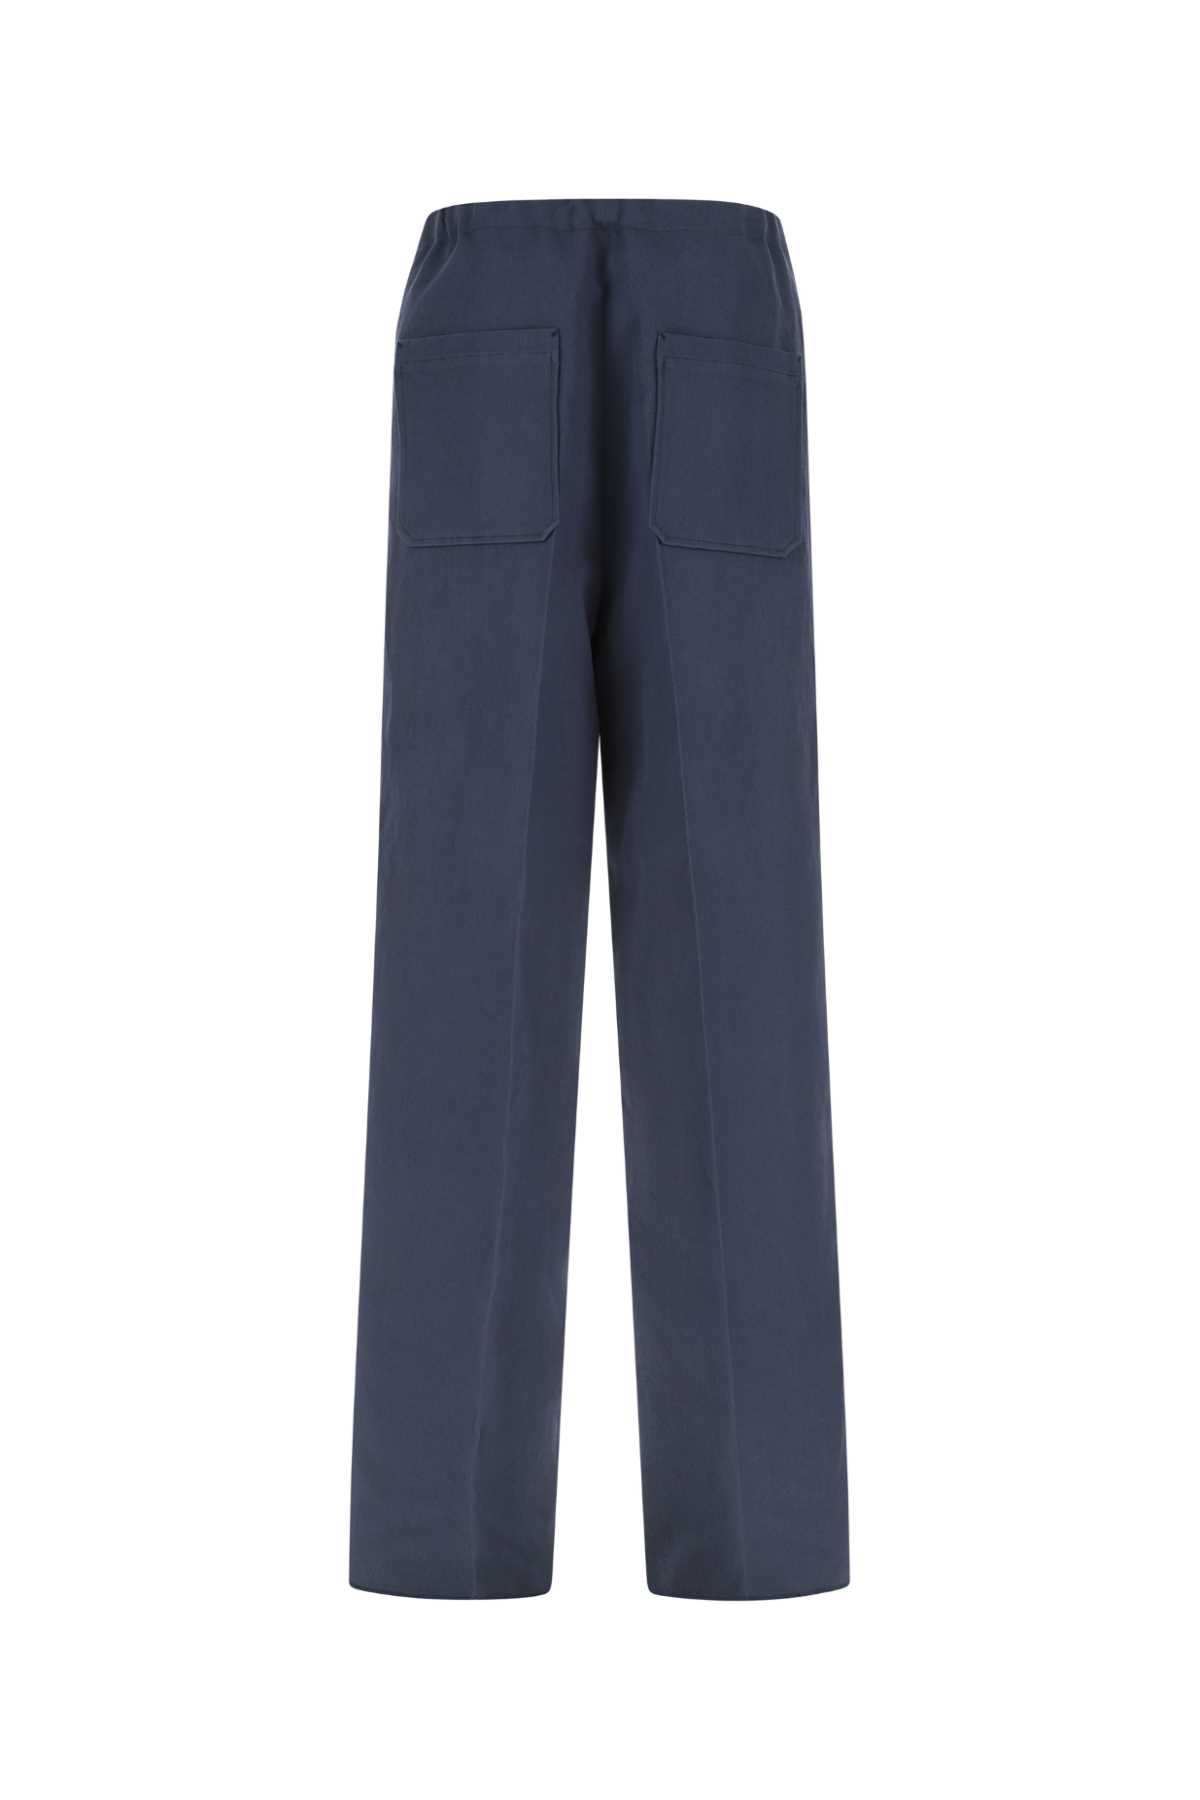 Zegna Navy Blue Cotton Blend Wide-leg Pant